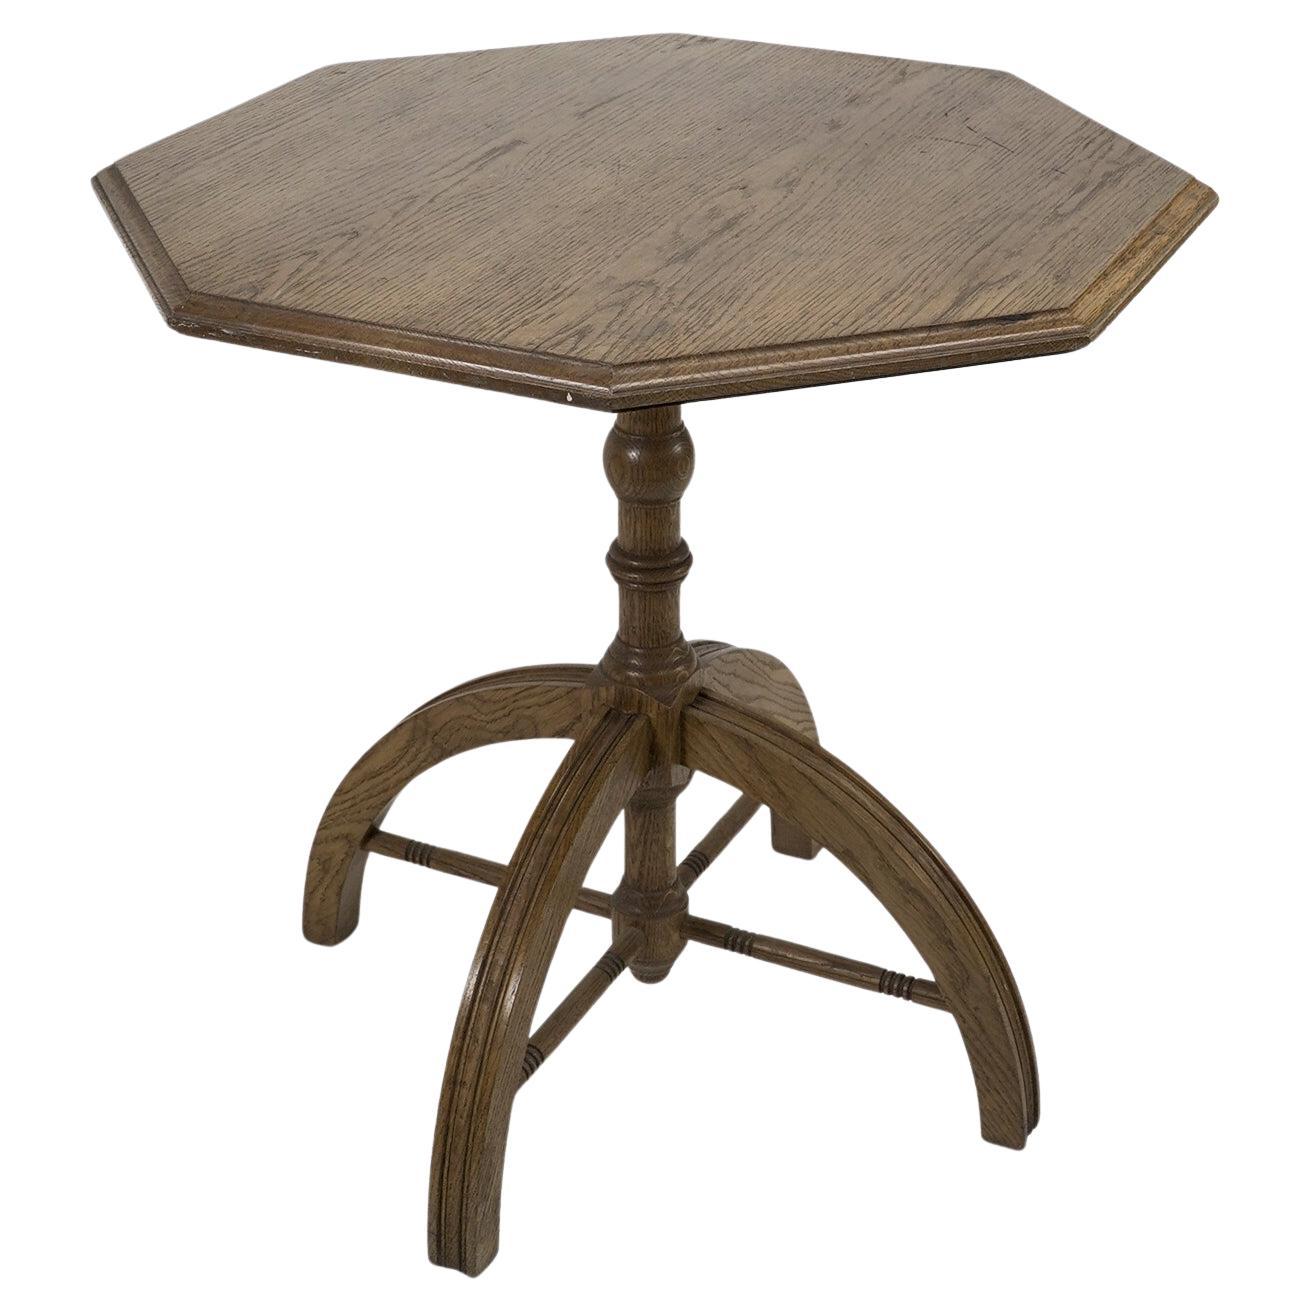 A.W.N. Pugin Table centrale octogonale en chêne The Moderns Revive, fabriquée par un artisan moderne.